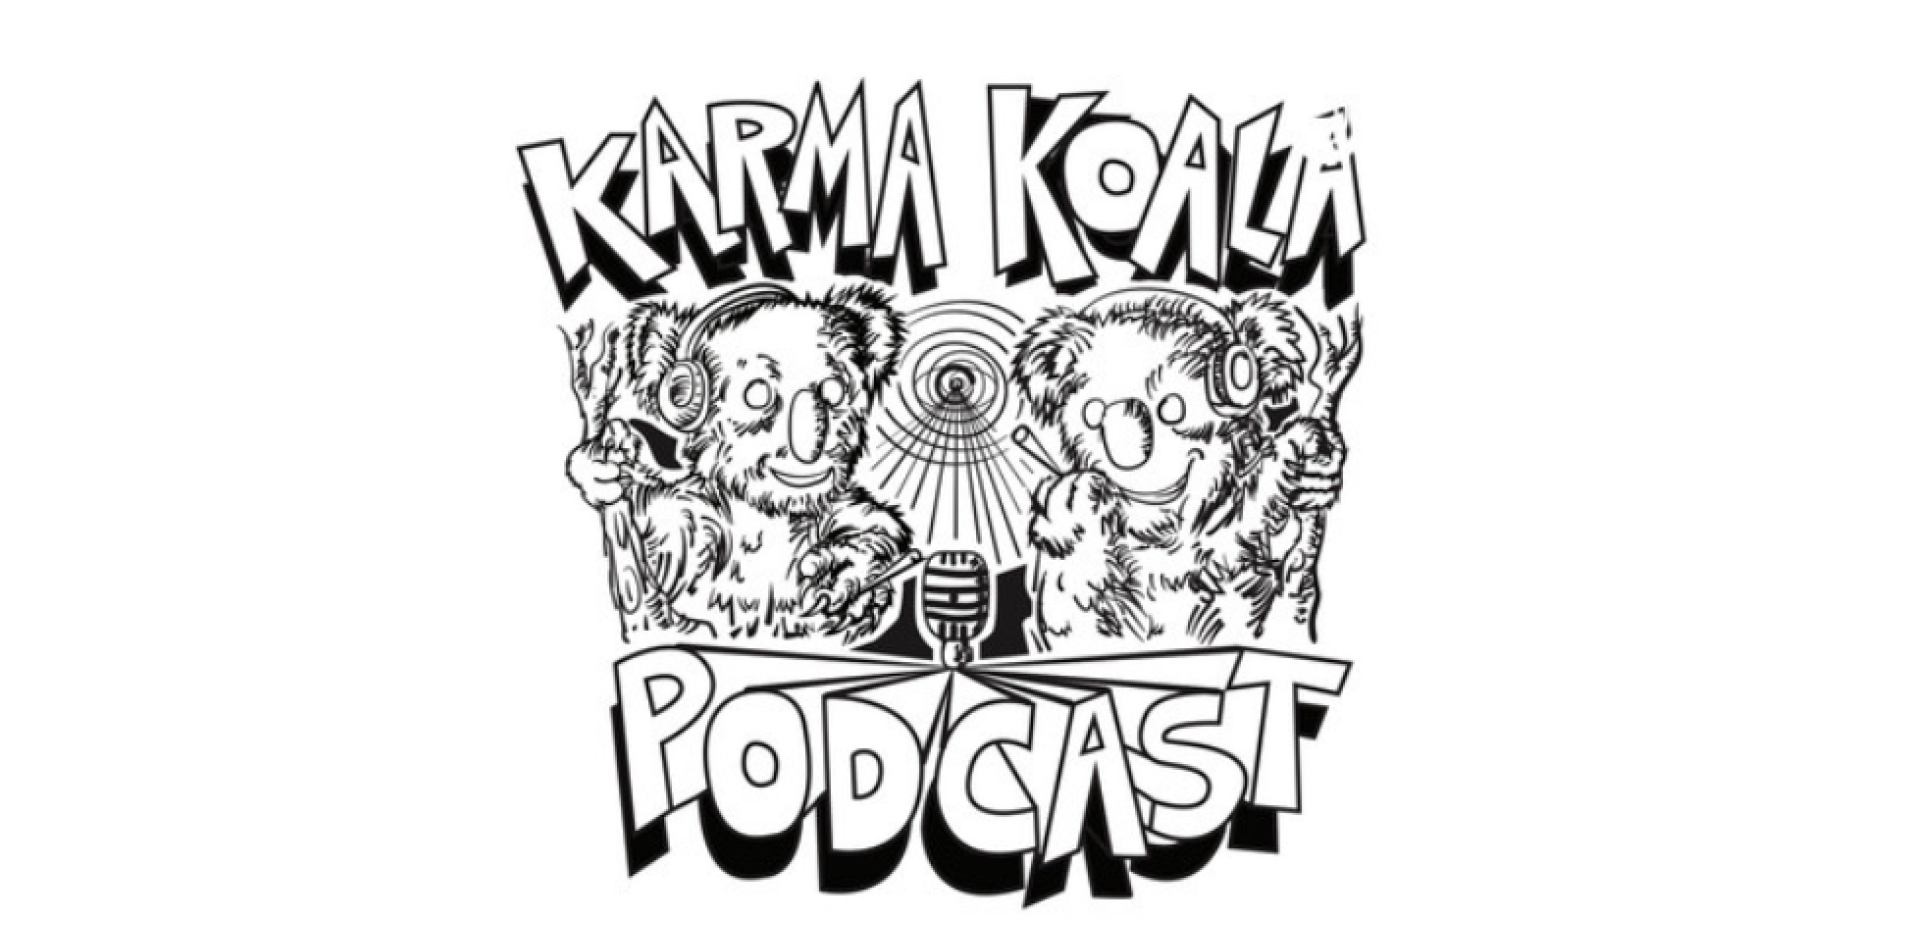 Karma Koala Podcast Episode 67: Diese Woche Michael Sassano, Inesa Ponomariovaite &amp; unser regelmäßiges Segment von Dentons deutschem Cannabis-Chef, Peter Homberg